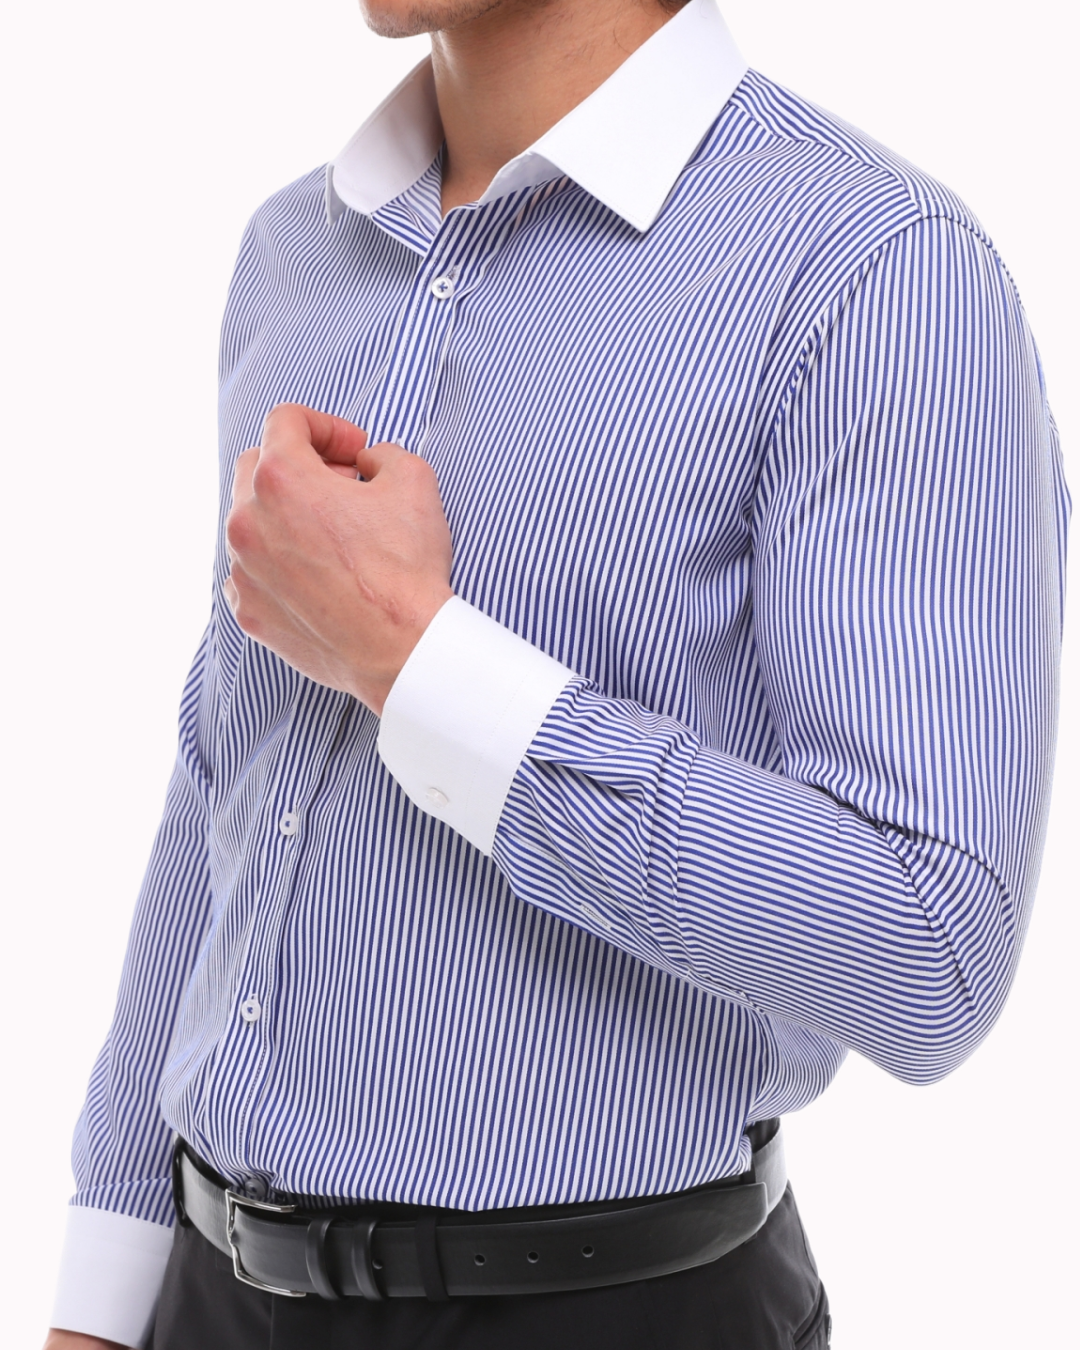 Blau-weiß gestreiftes Hemd mit weißem Kragen - einfaches Bügeln gestreiftes blaues Hemd